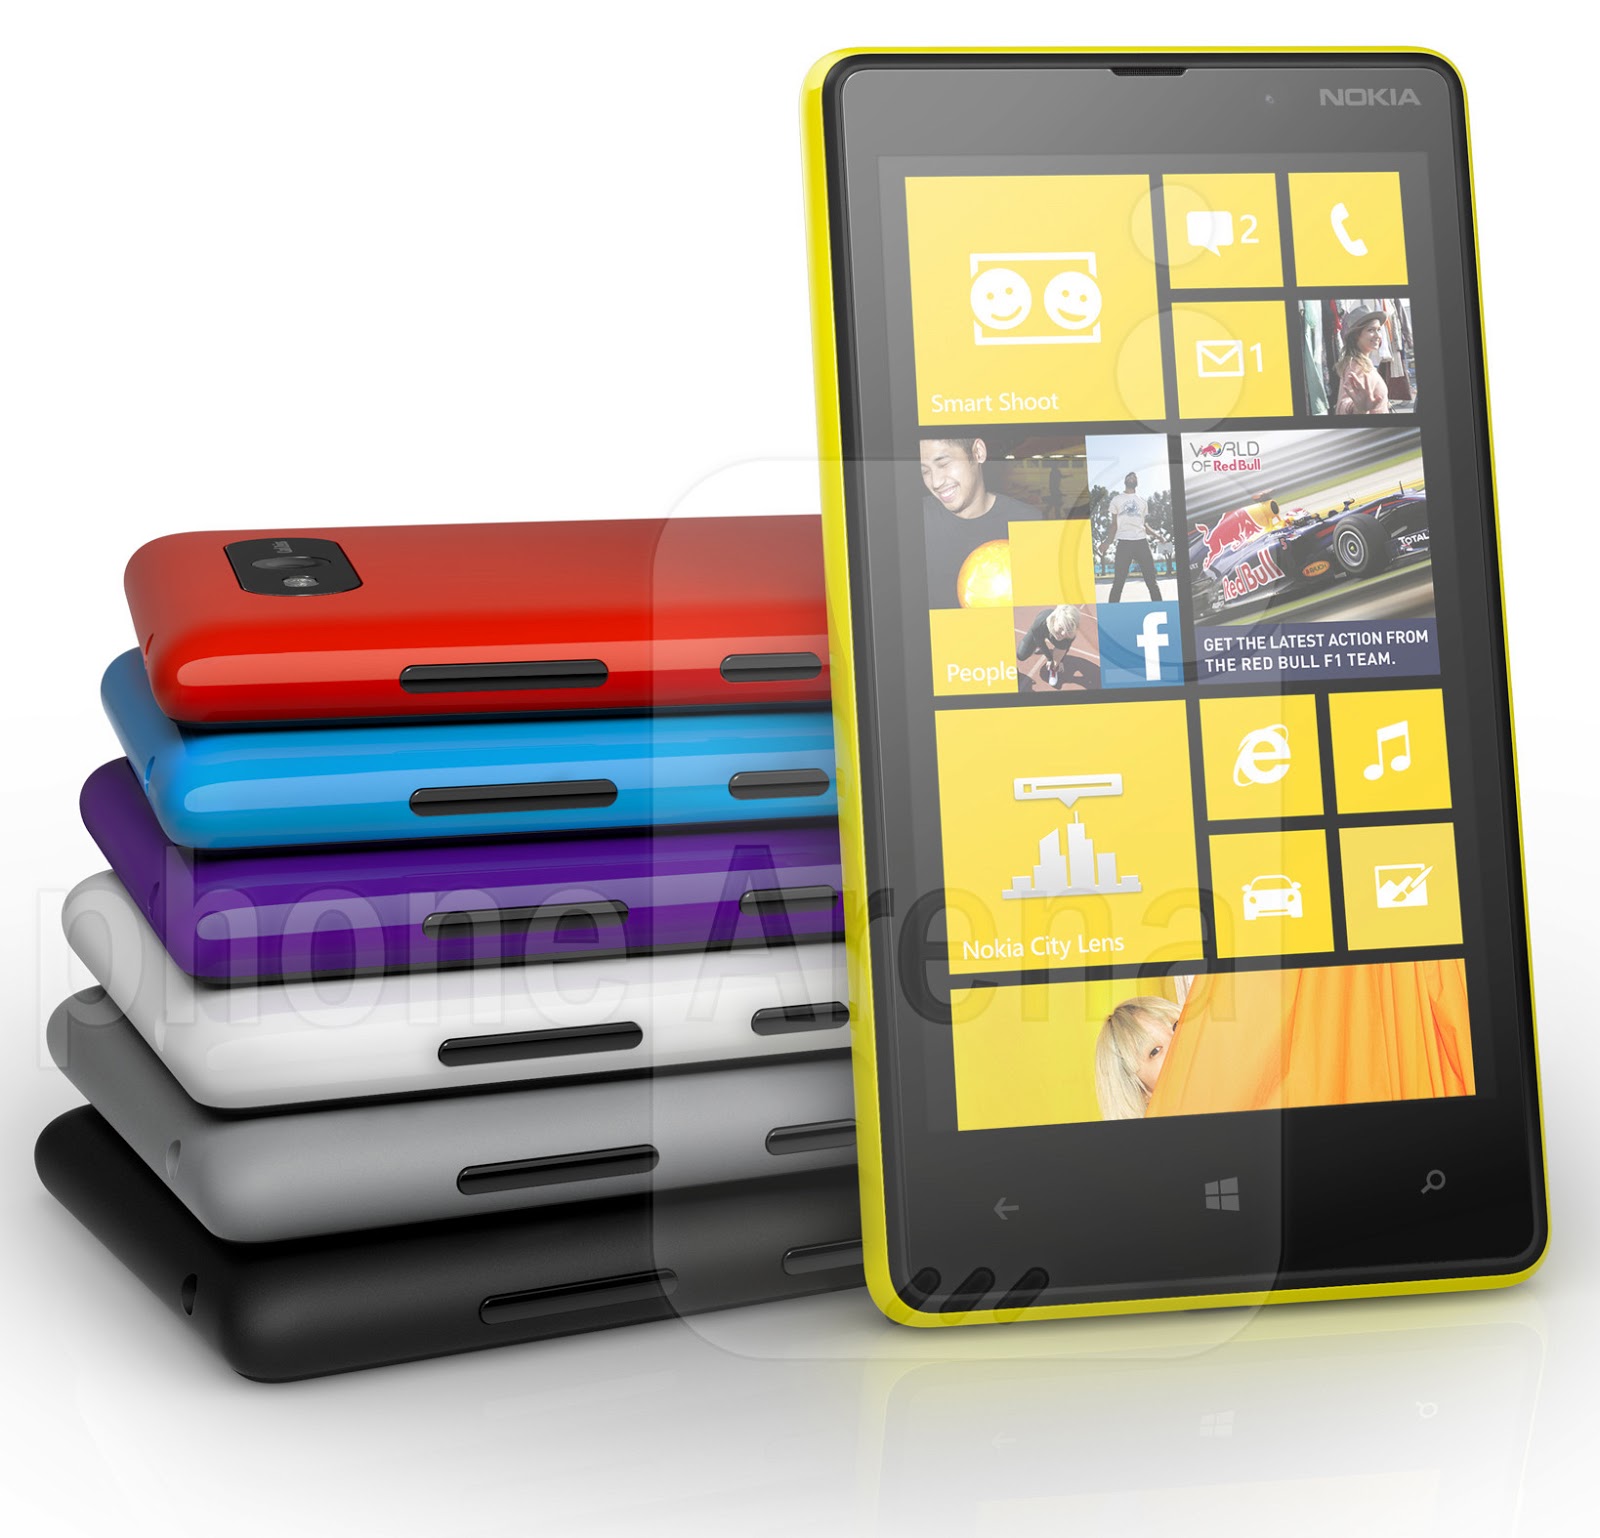 Nokia Lumia 820 Wallpapers Hd Nokia Lumia 820 Wallpapers - Nokia To Windows - HD Wallpaper 